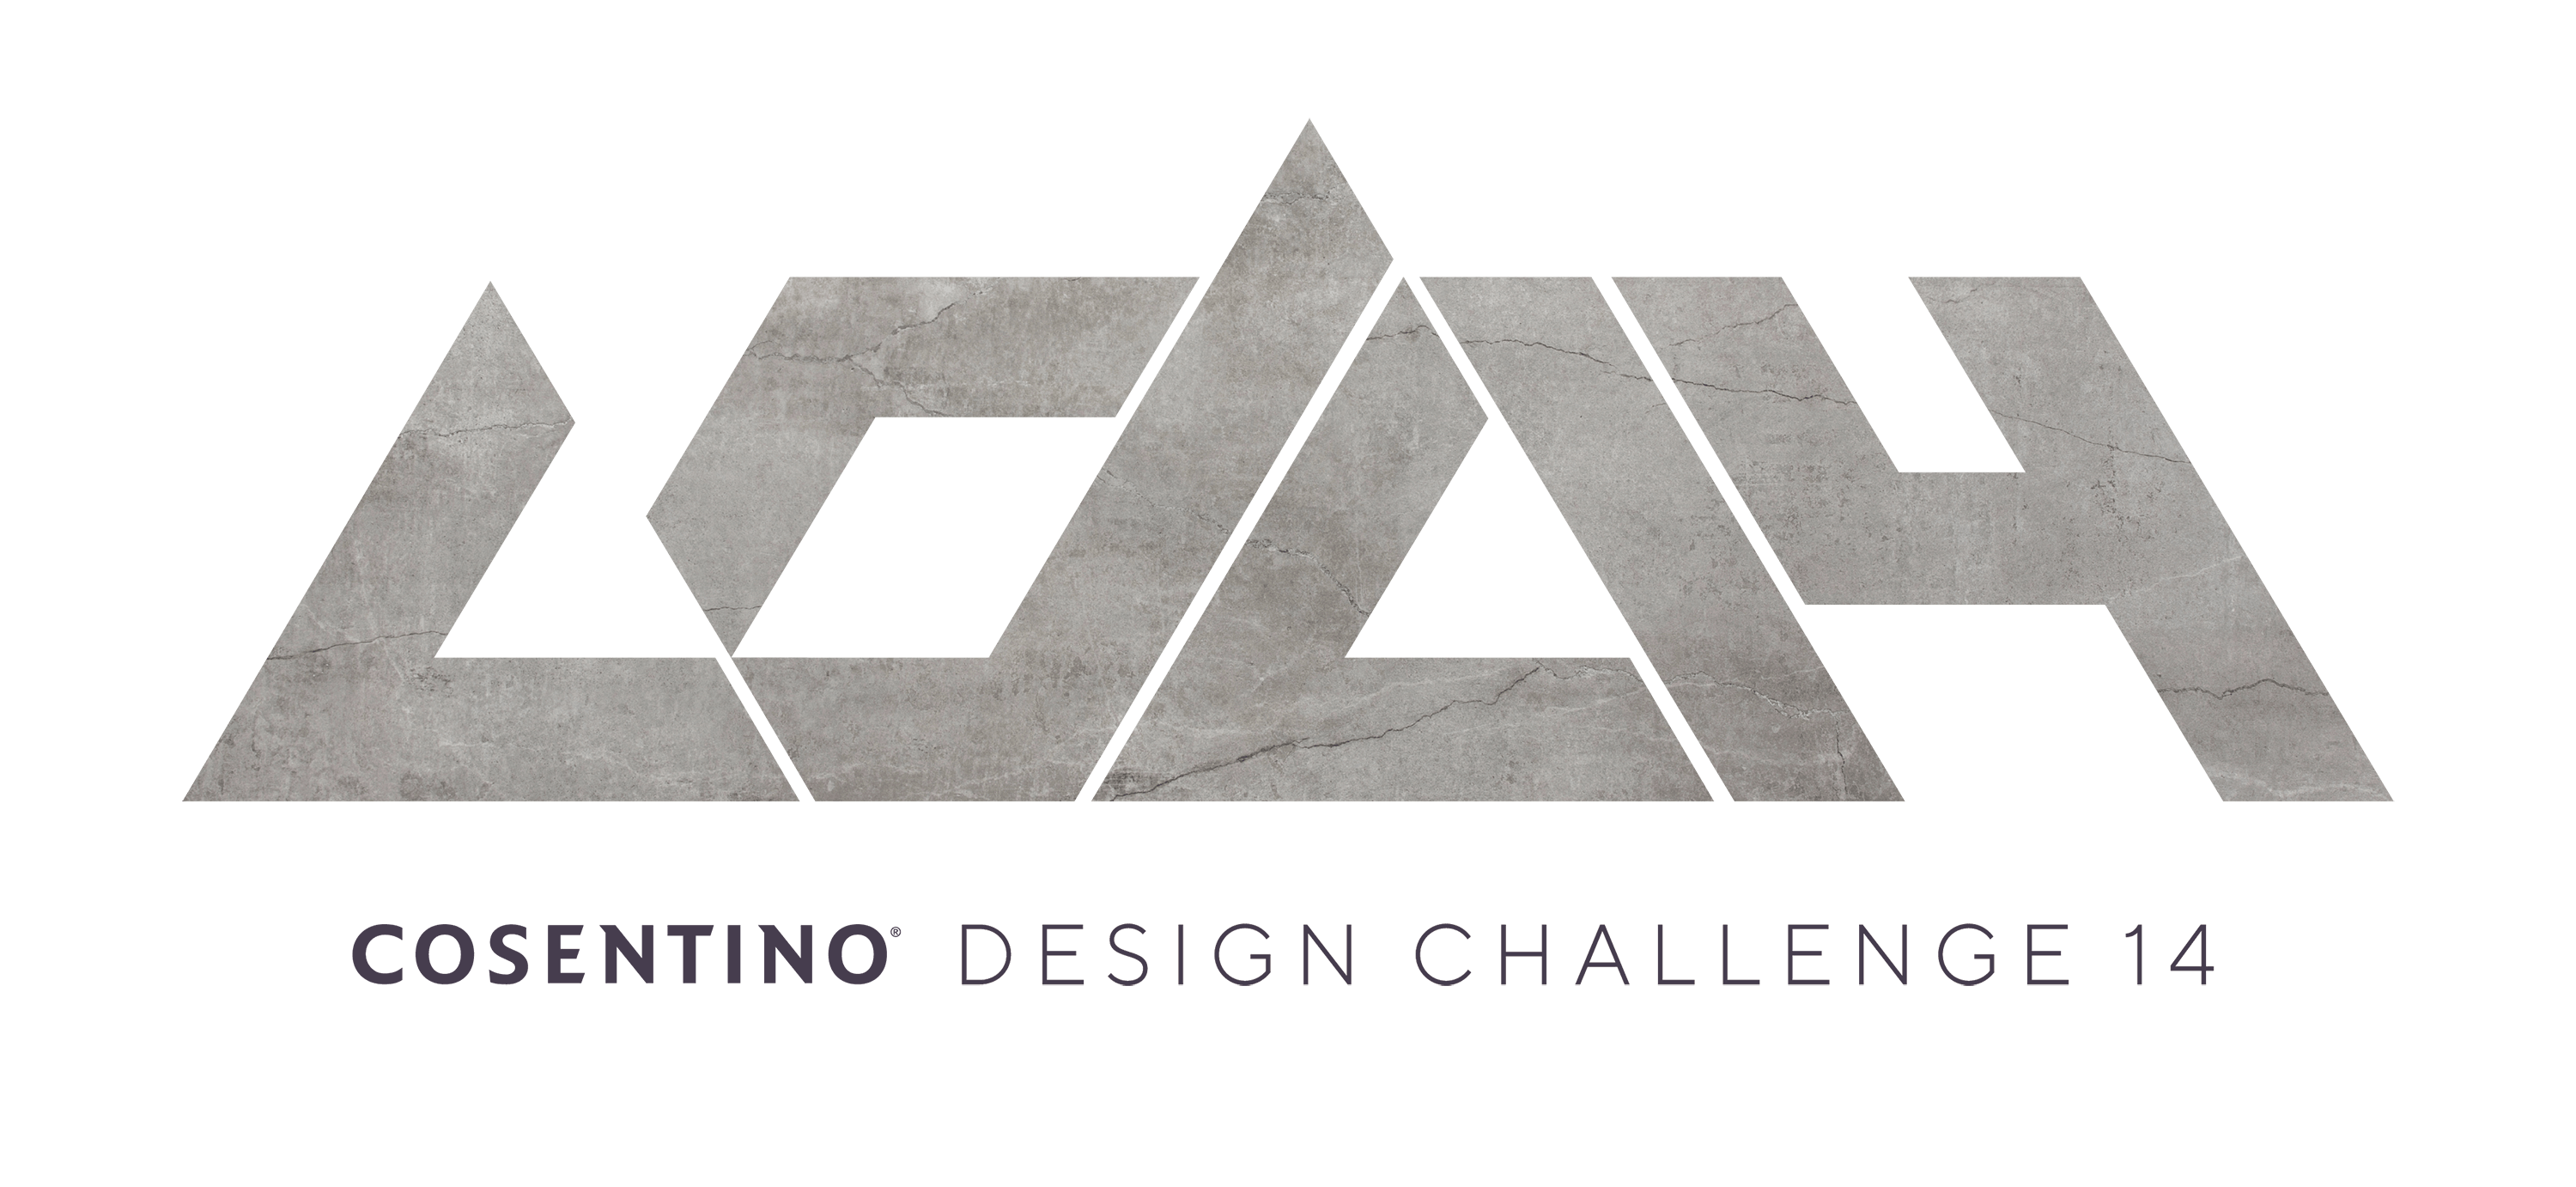 Image 31 of LOGO CDC 14 Final 01 1 1 in Cosentino presents the 14th edition of the Cosentino Design Challenge - Cosentino